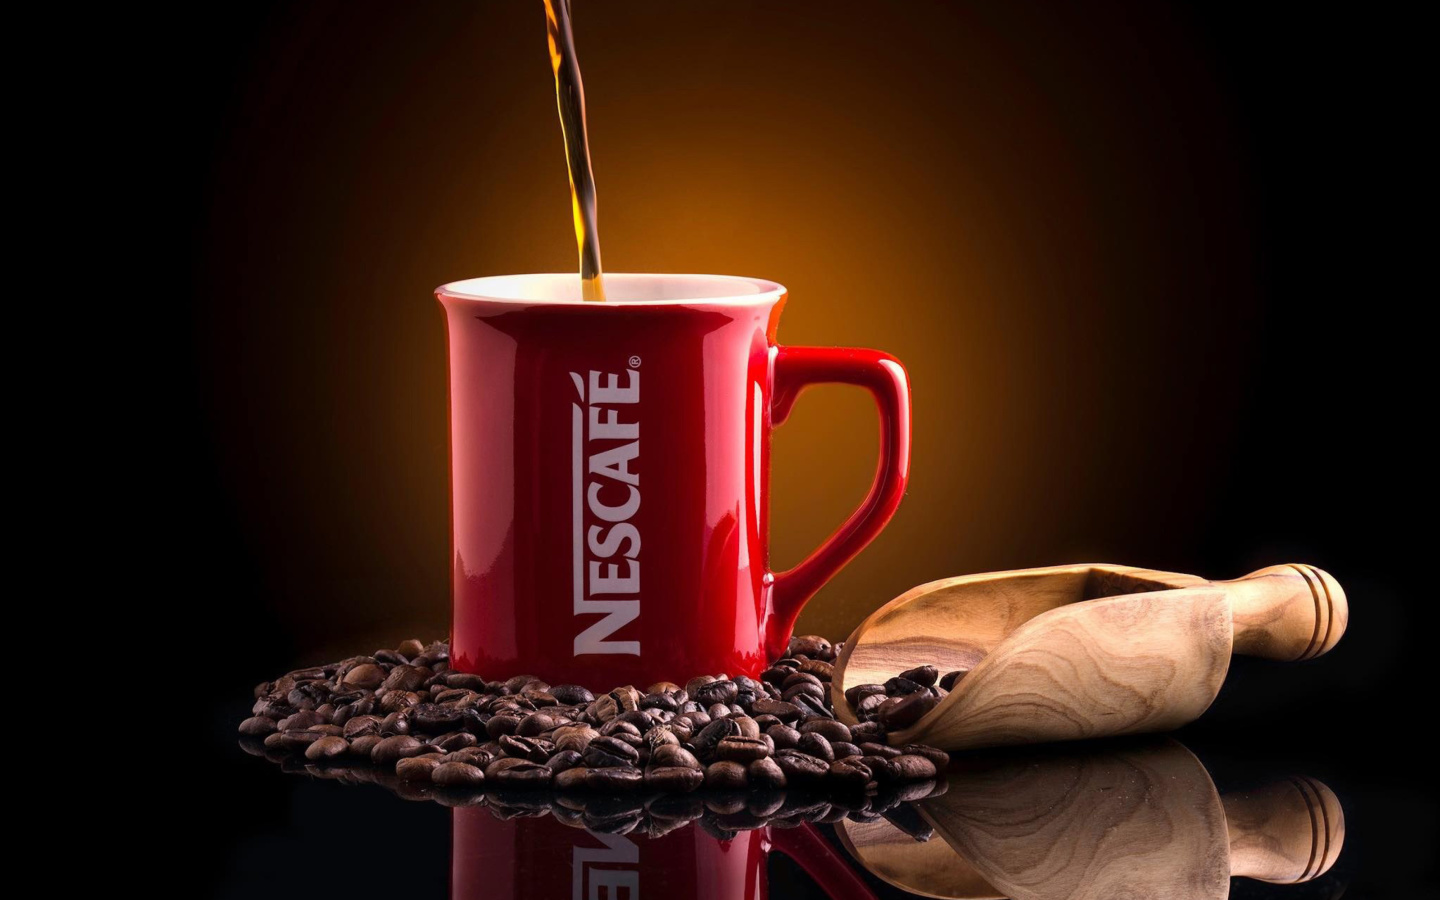 Sfondi Nescafe Coffee 1440x900